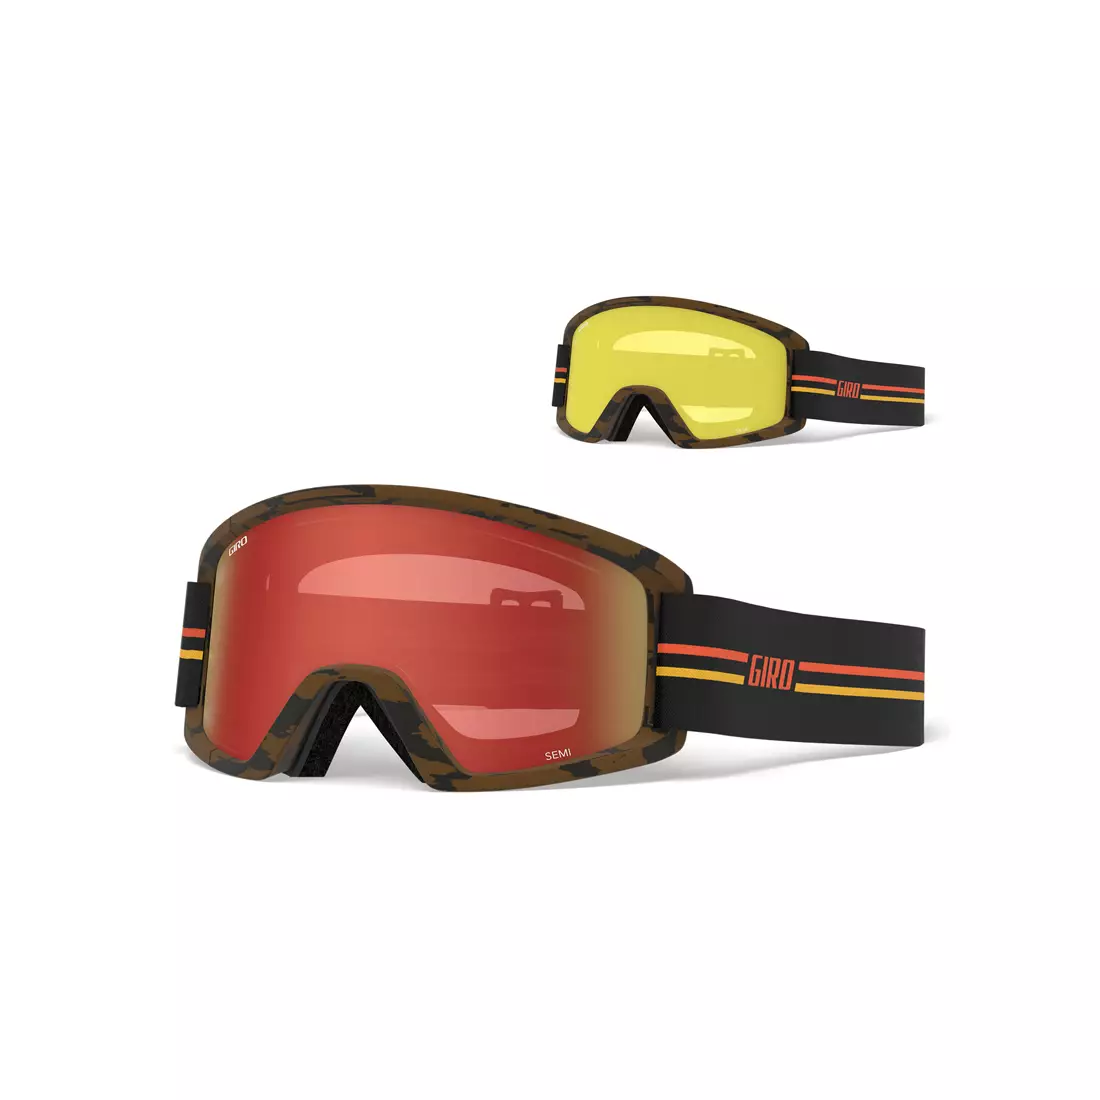 Zimní lyžařské / snowboardové brýle GIRO SEMI GP BLACK ORANGE GR-7105387